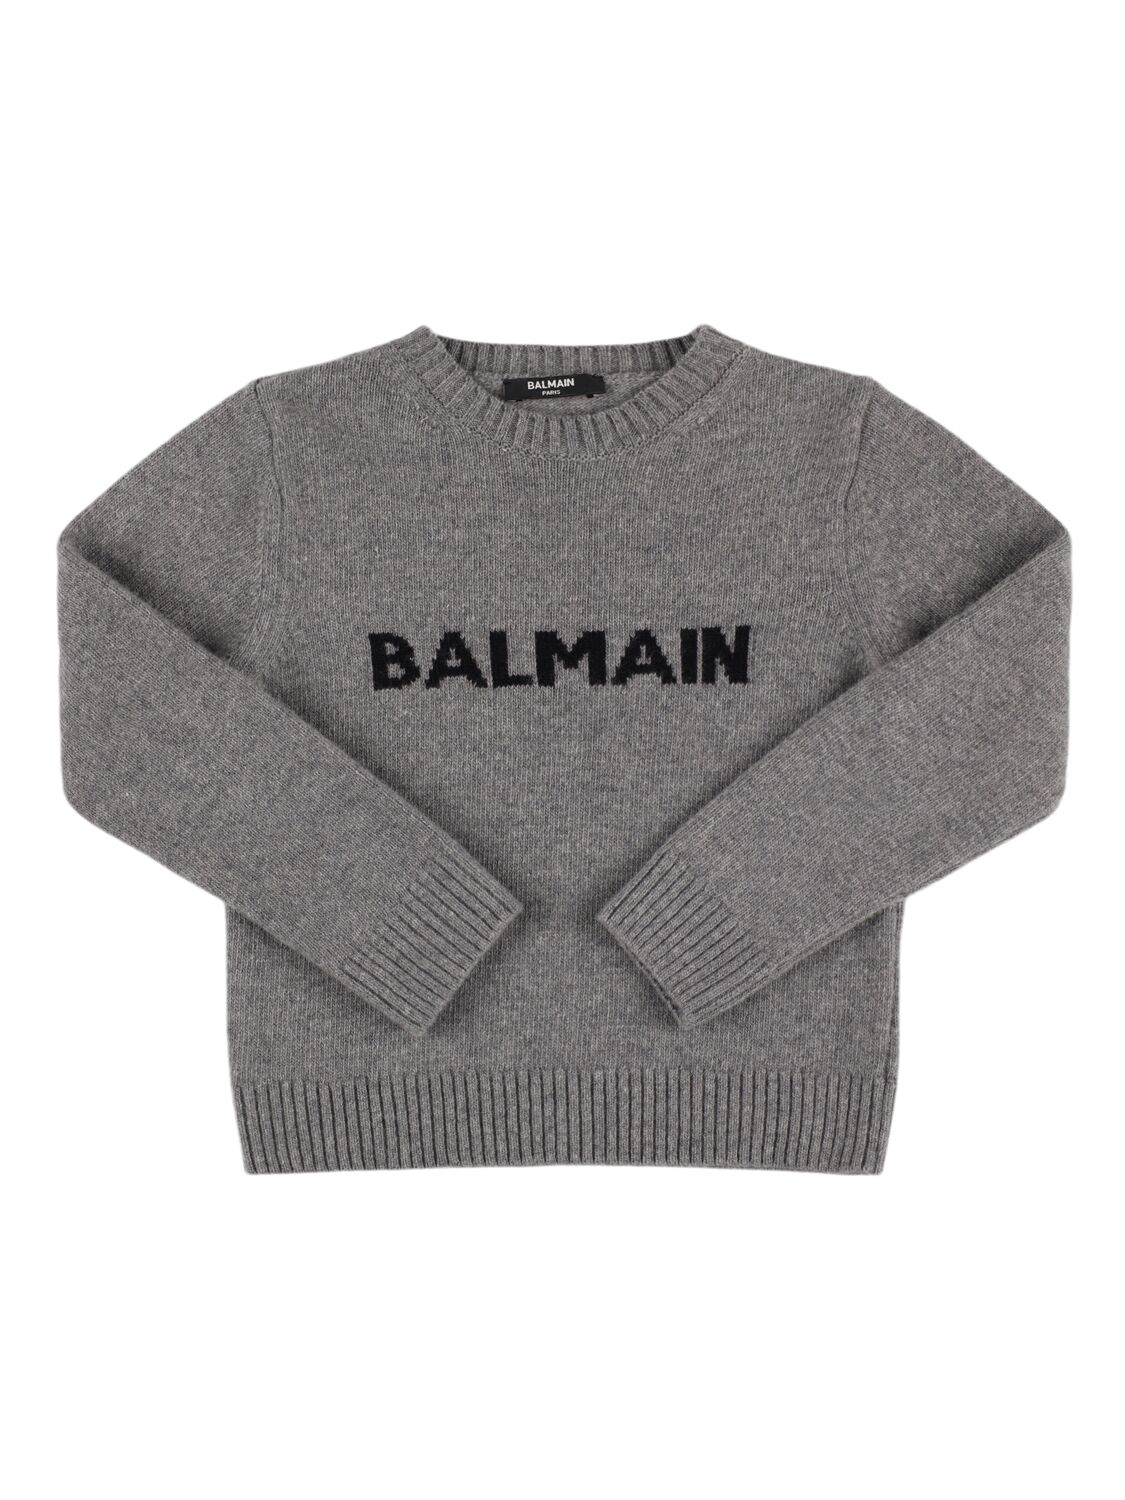 Balmain Wool Blend Knit Sweater In Gray